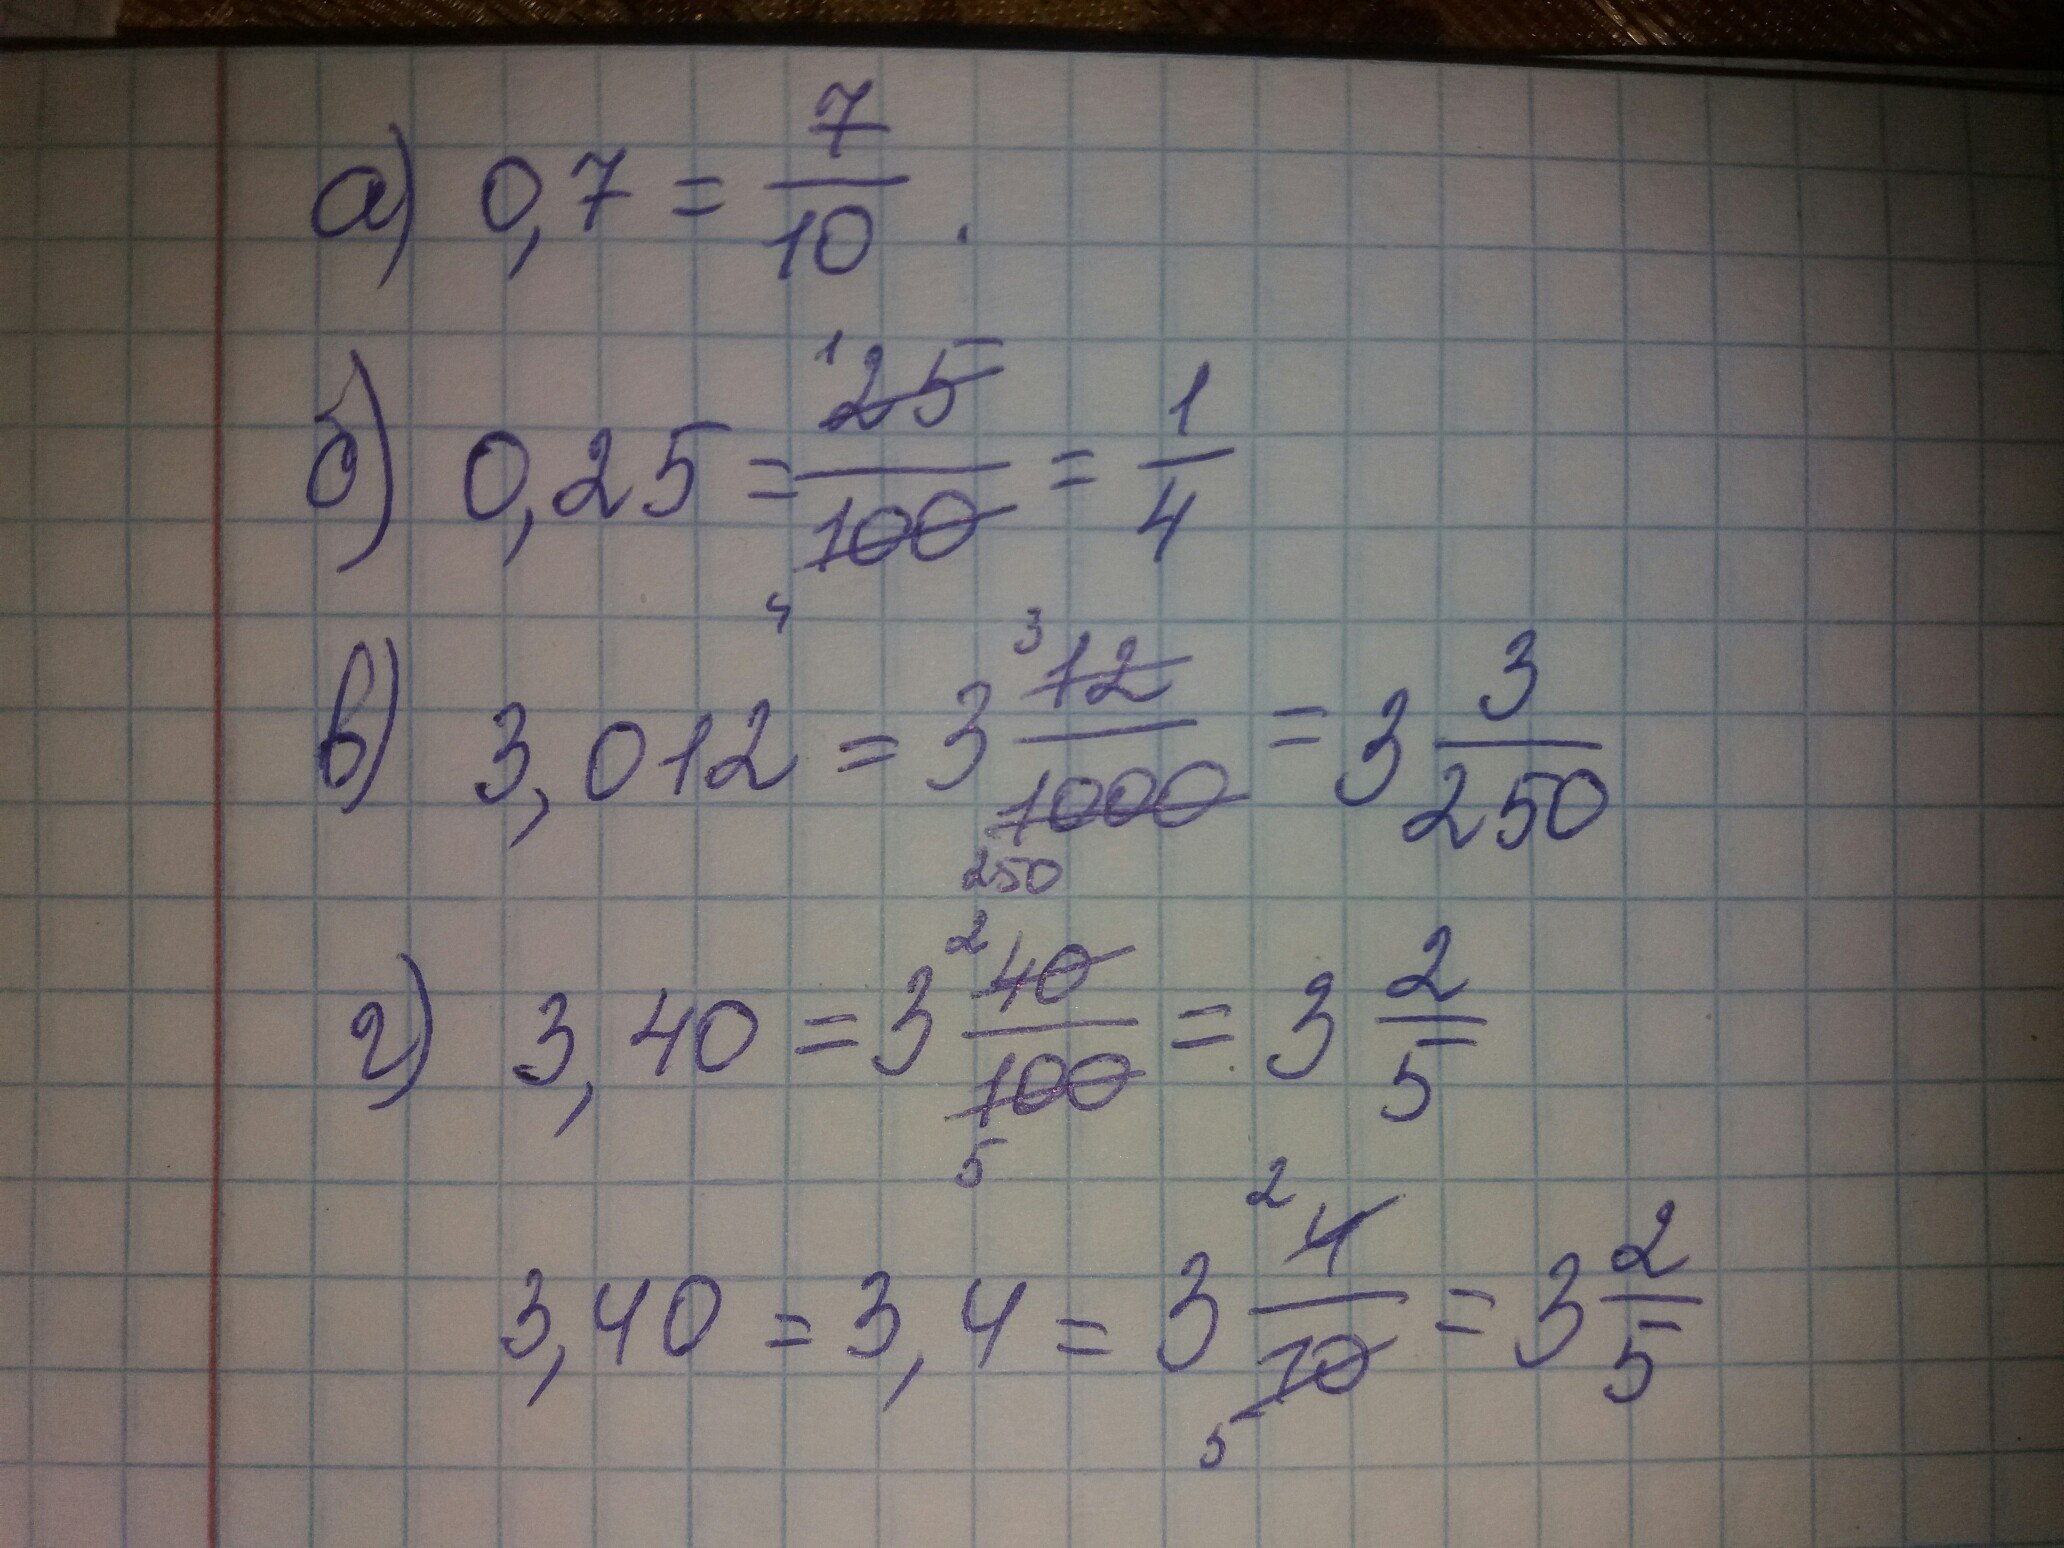 Запишите десятичную дробь между 15.3 и 15.4. Запишите десятичную дробь равную сумме 3 10-1+1 10-2+5 10-4 решу ОГЭ.